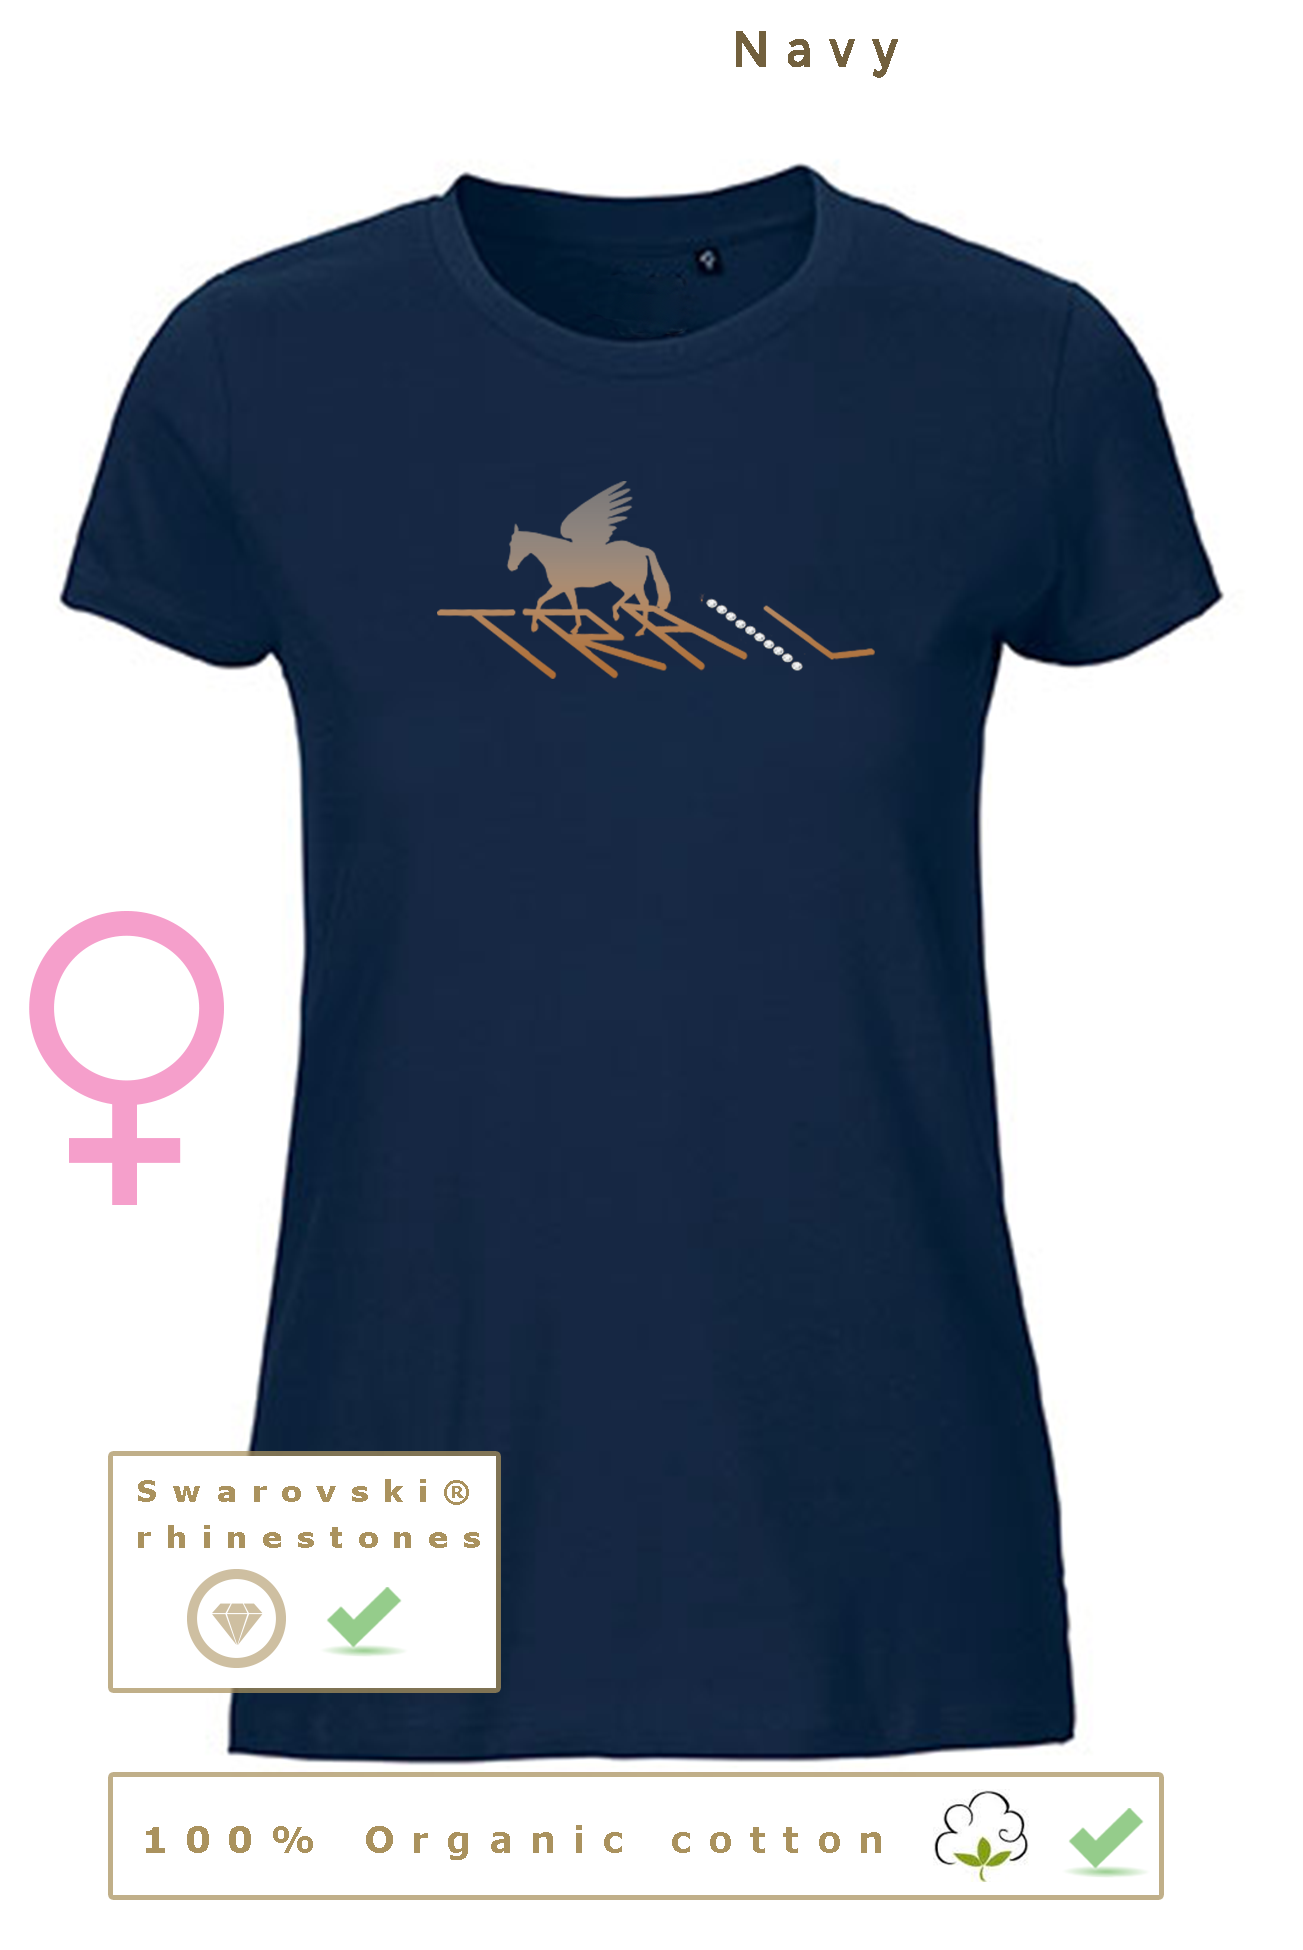 T-shirt BIO, 34€ pour homme/femme & 31€ pour enfant (disponible dans toutes les couleurs)